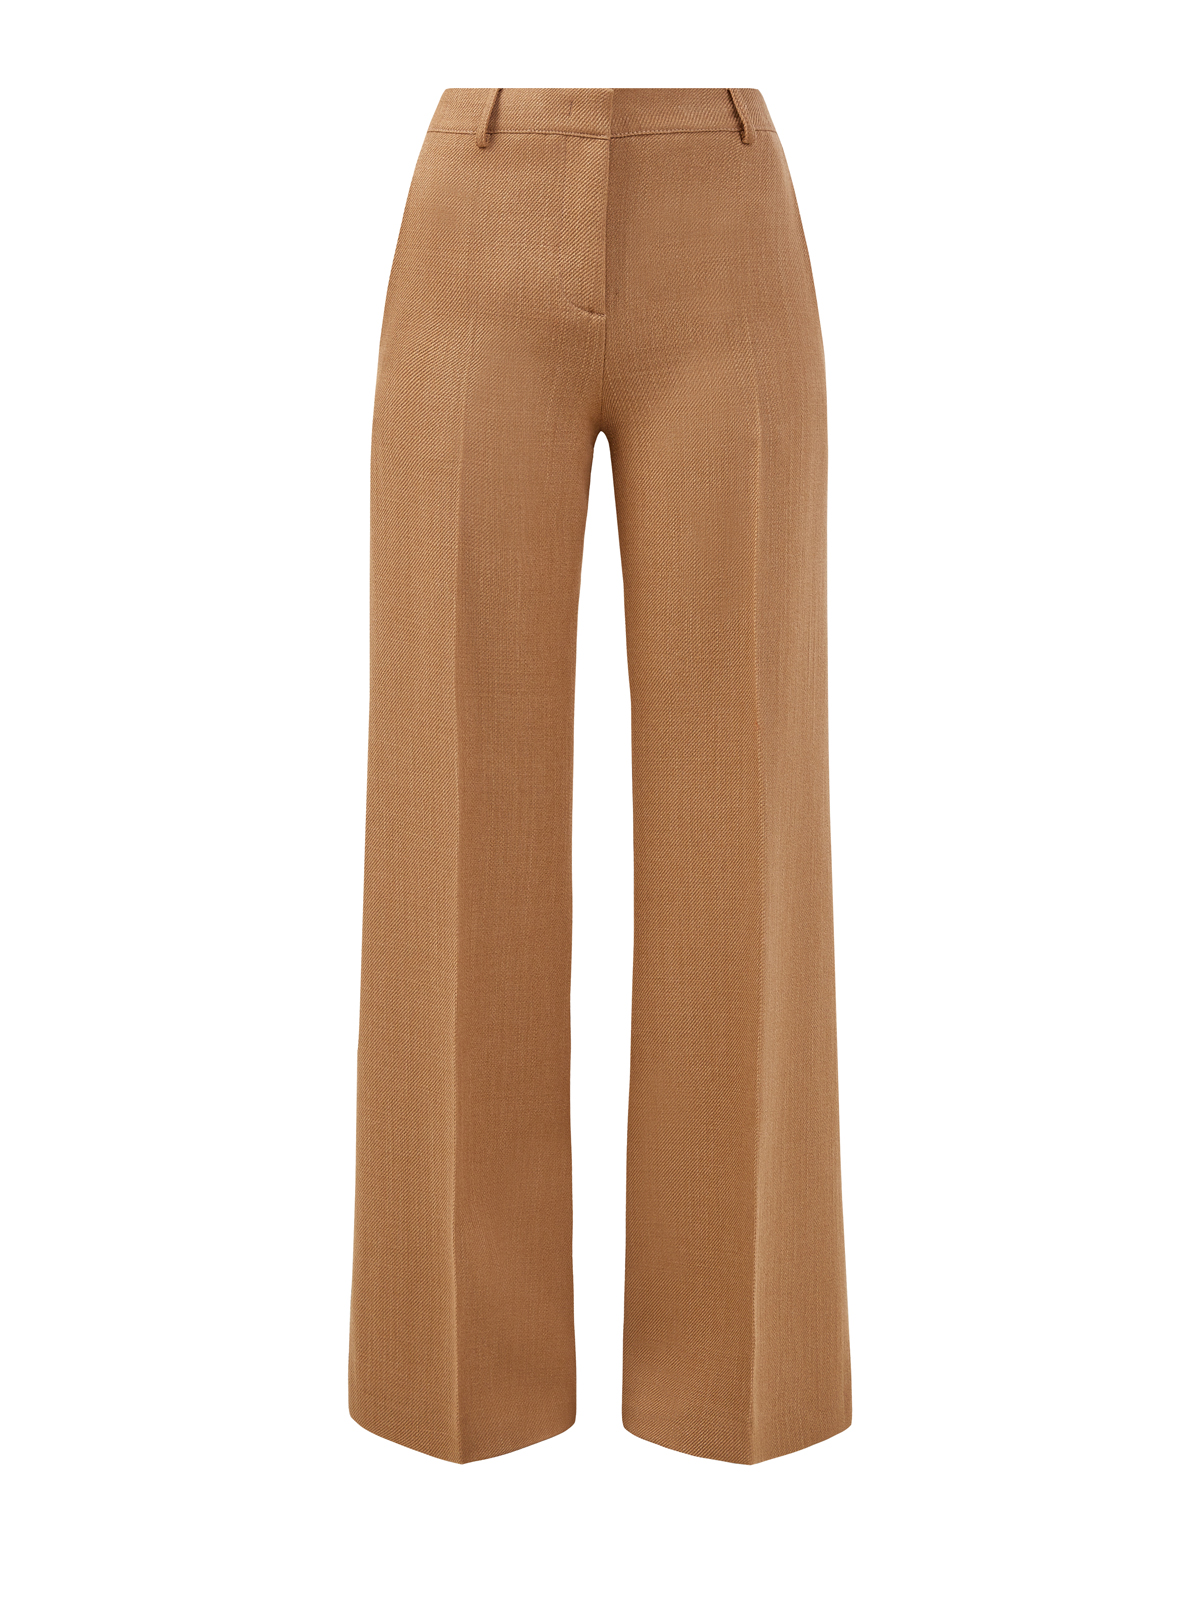 Удлиненные брюки-клеш из шерсти и вискозы ETRO коричневого цвета